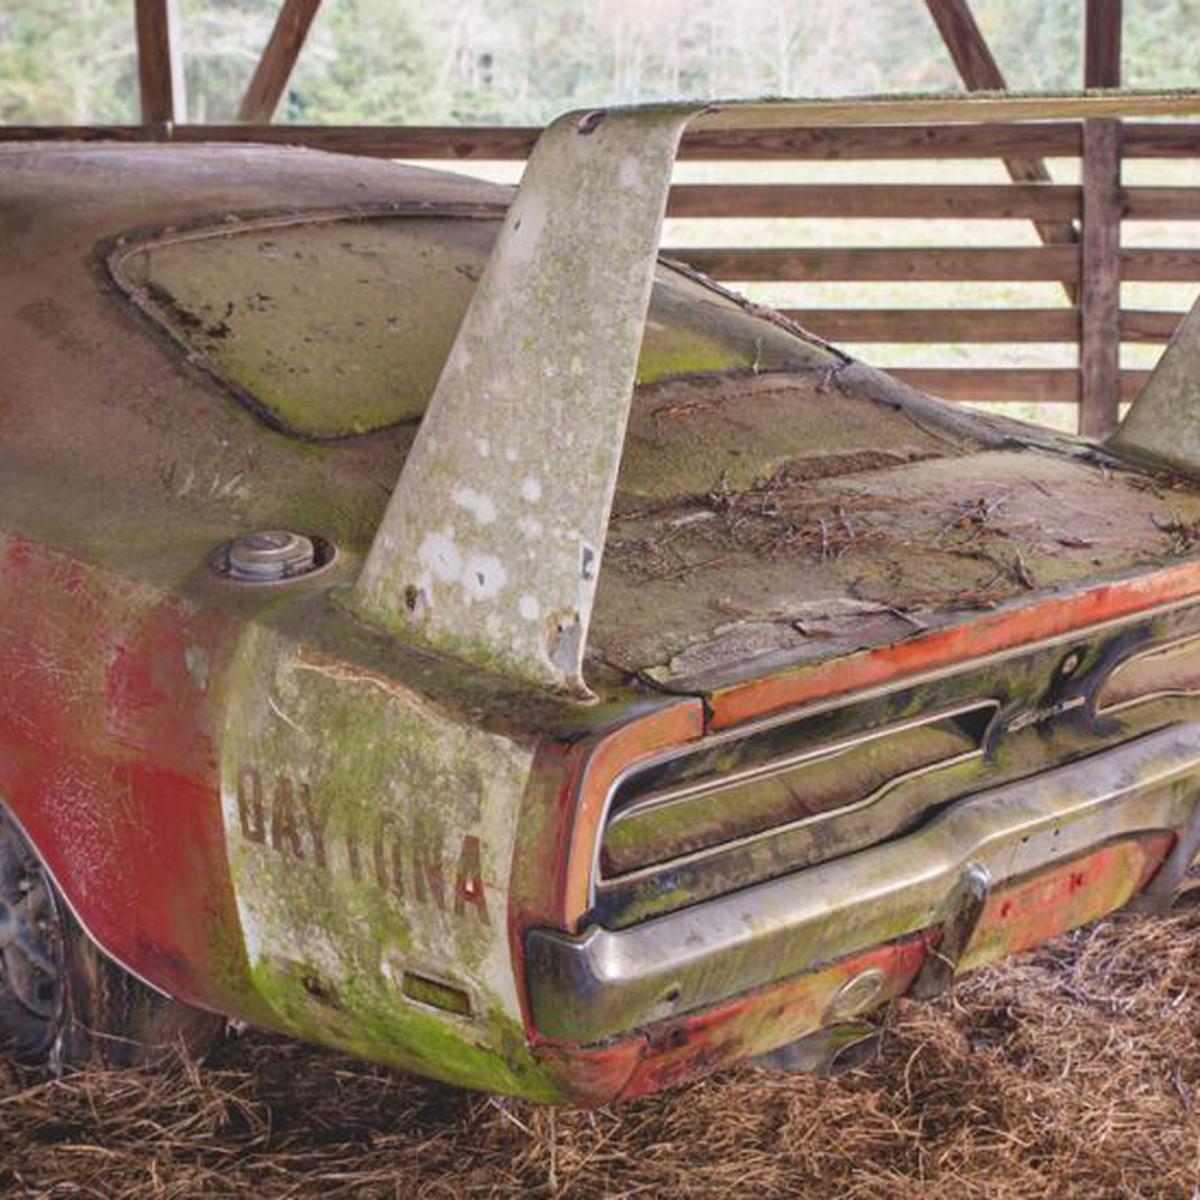 Encuentran Dodge Charger Daytona de 1969 abandonado [FOTOS] |  RUEDAS-TUERCAS | EL COMERCIO PERÚ